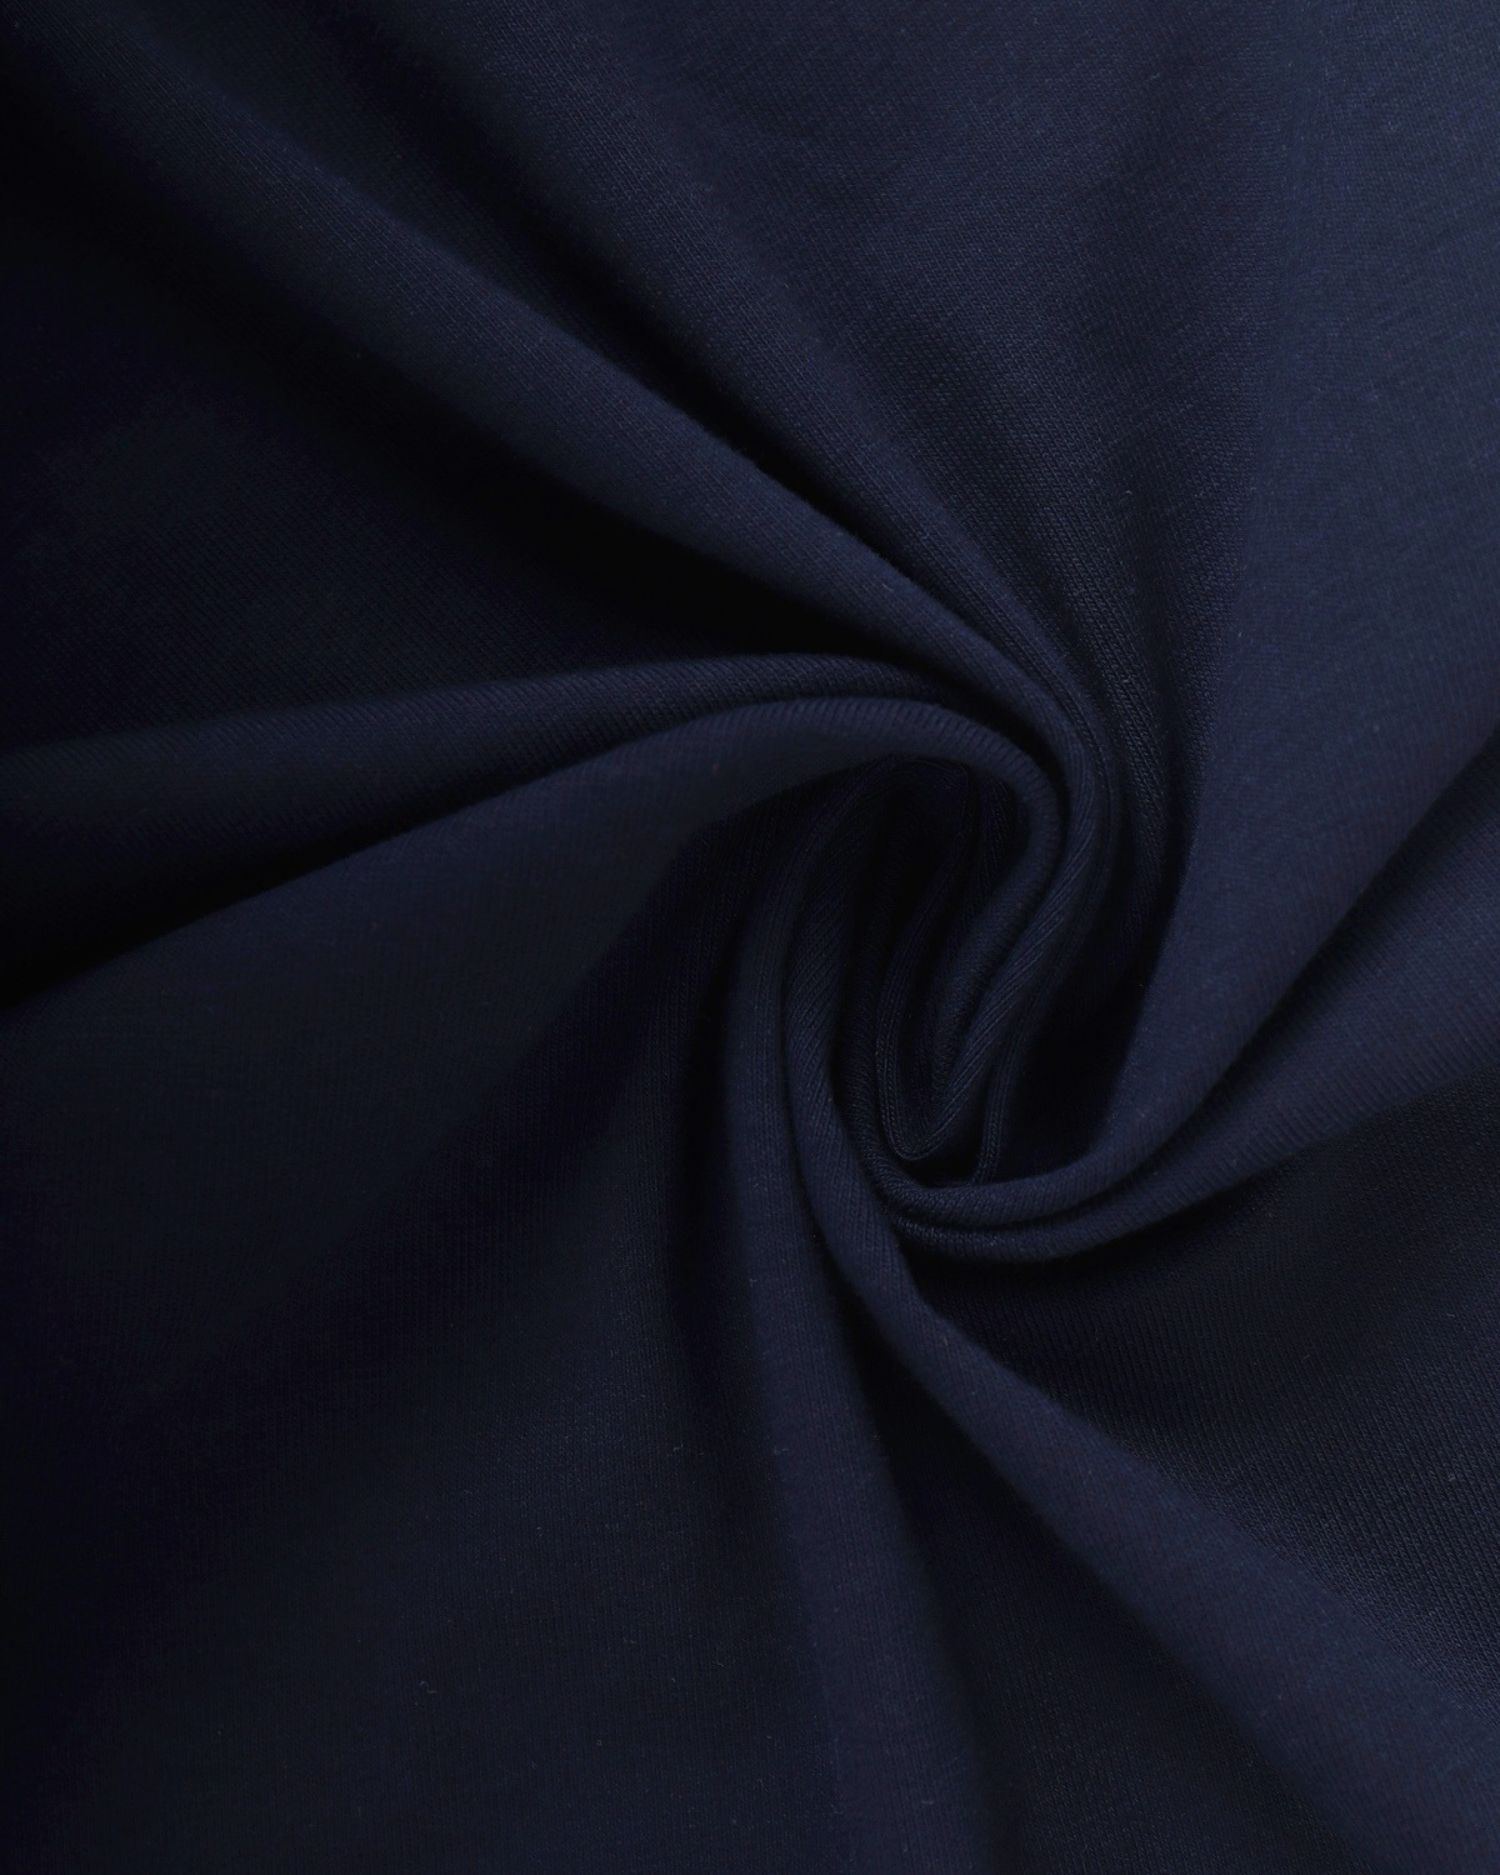 Cotton single Jersey with elastane, 1 meter, 185gr/m2, dark blue